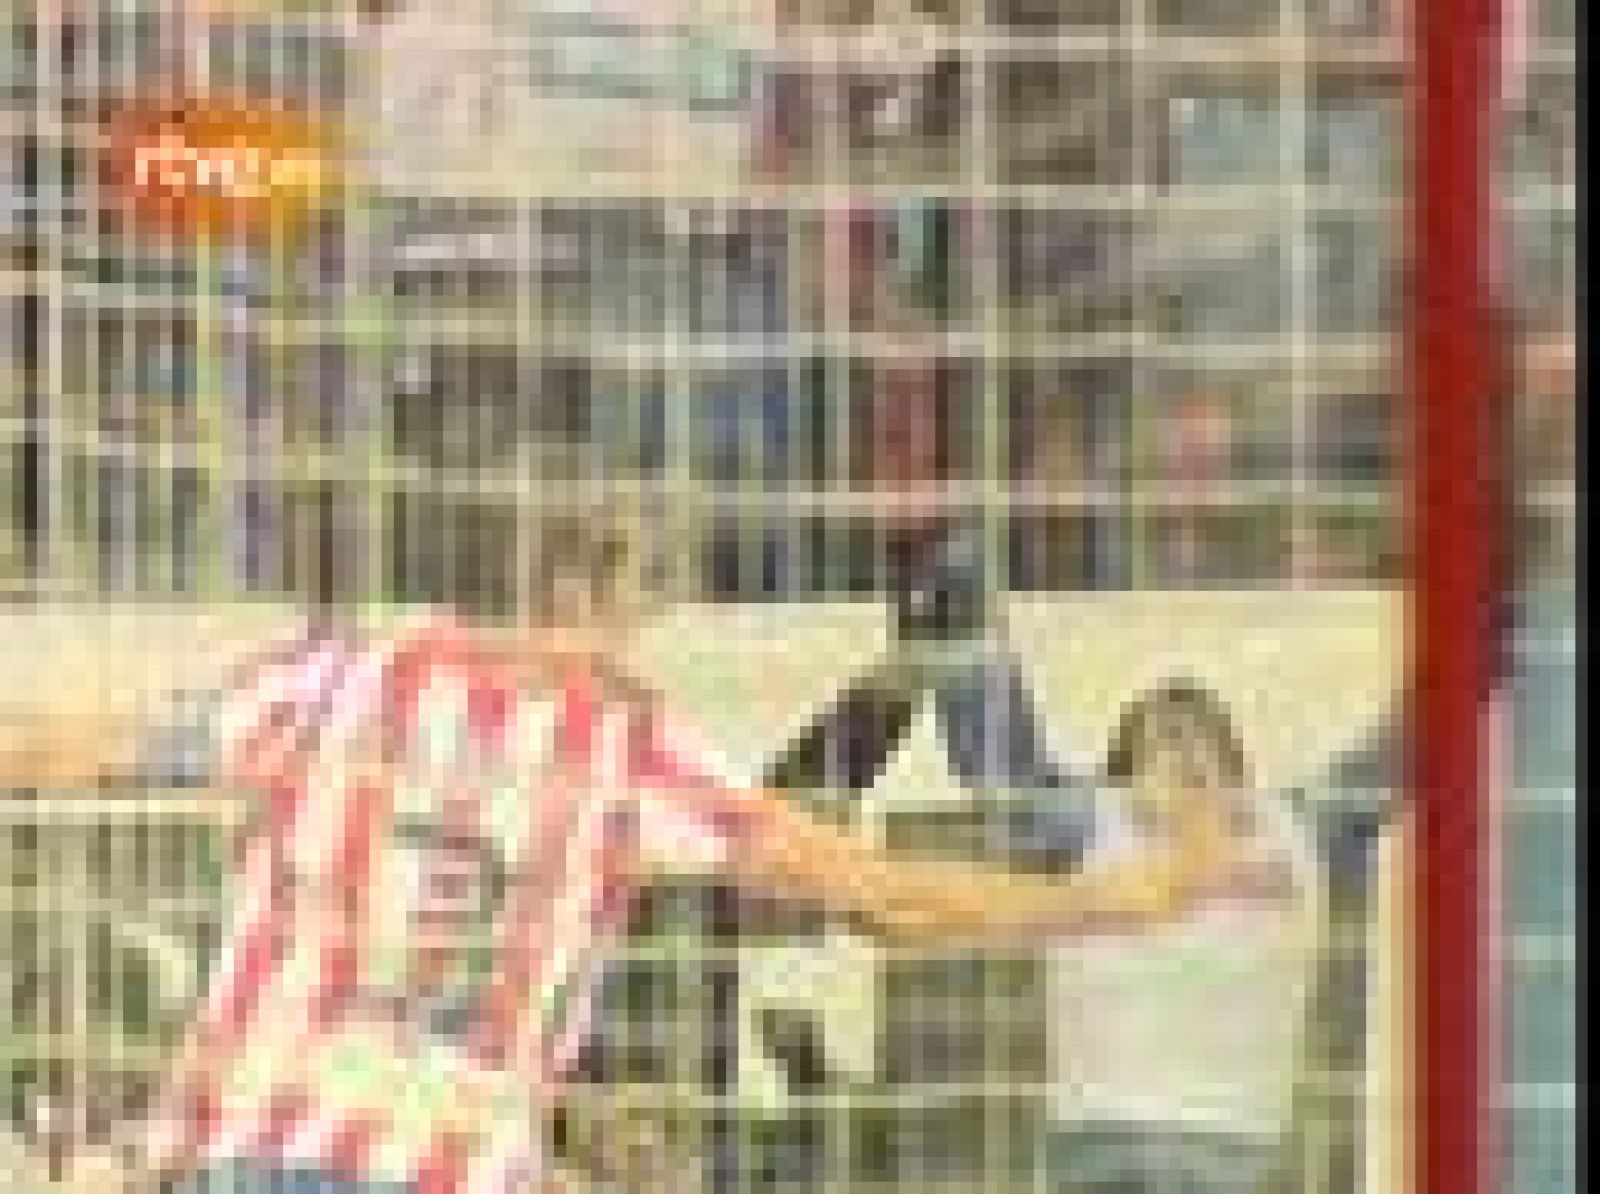 Un gol de cabeza de Antonio López en el minuto 93 dio los tres puntos y la victoria ante el Sevilla a un Atlético que sufrió para brindar una nueva victoria a su afición. Quique Sánchez Flores, muy satisfecho por la victoria y el planteamiento del partido.